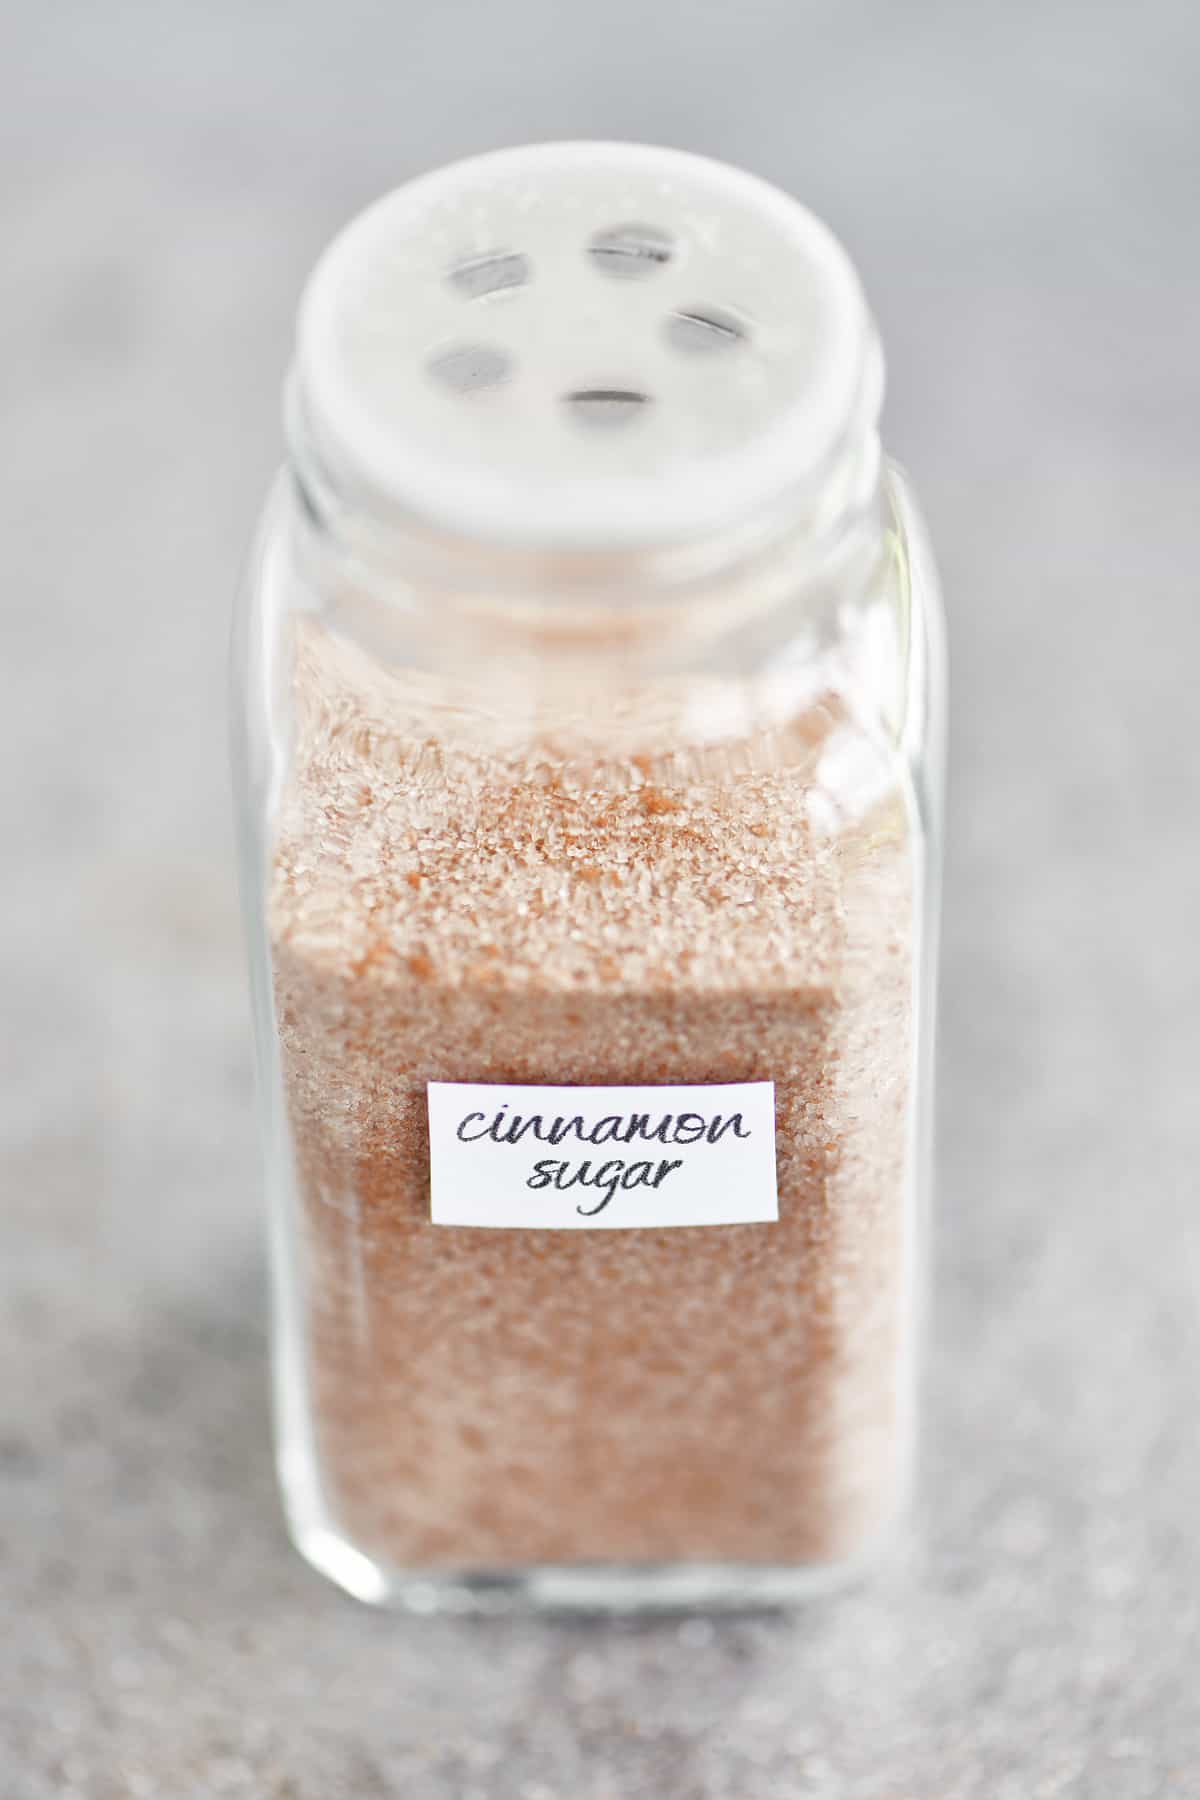 cinnamon sugar in a spice jar